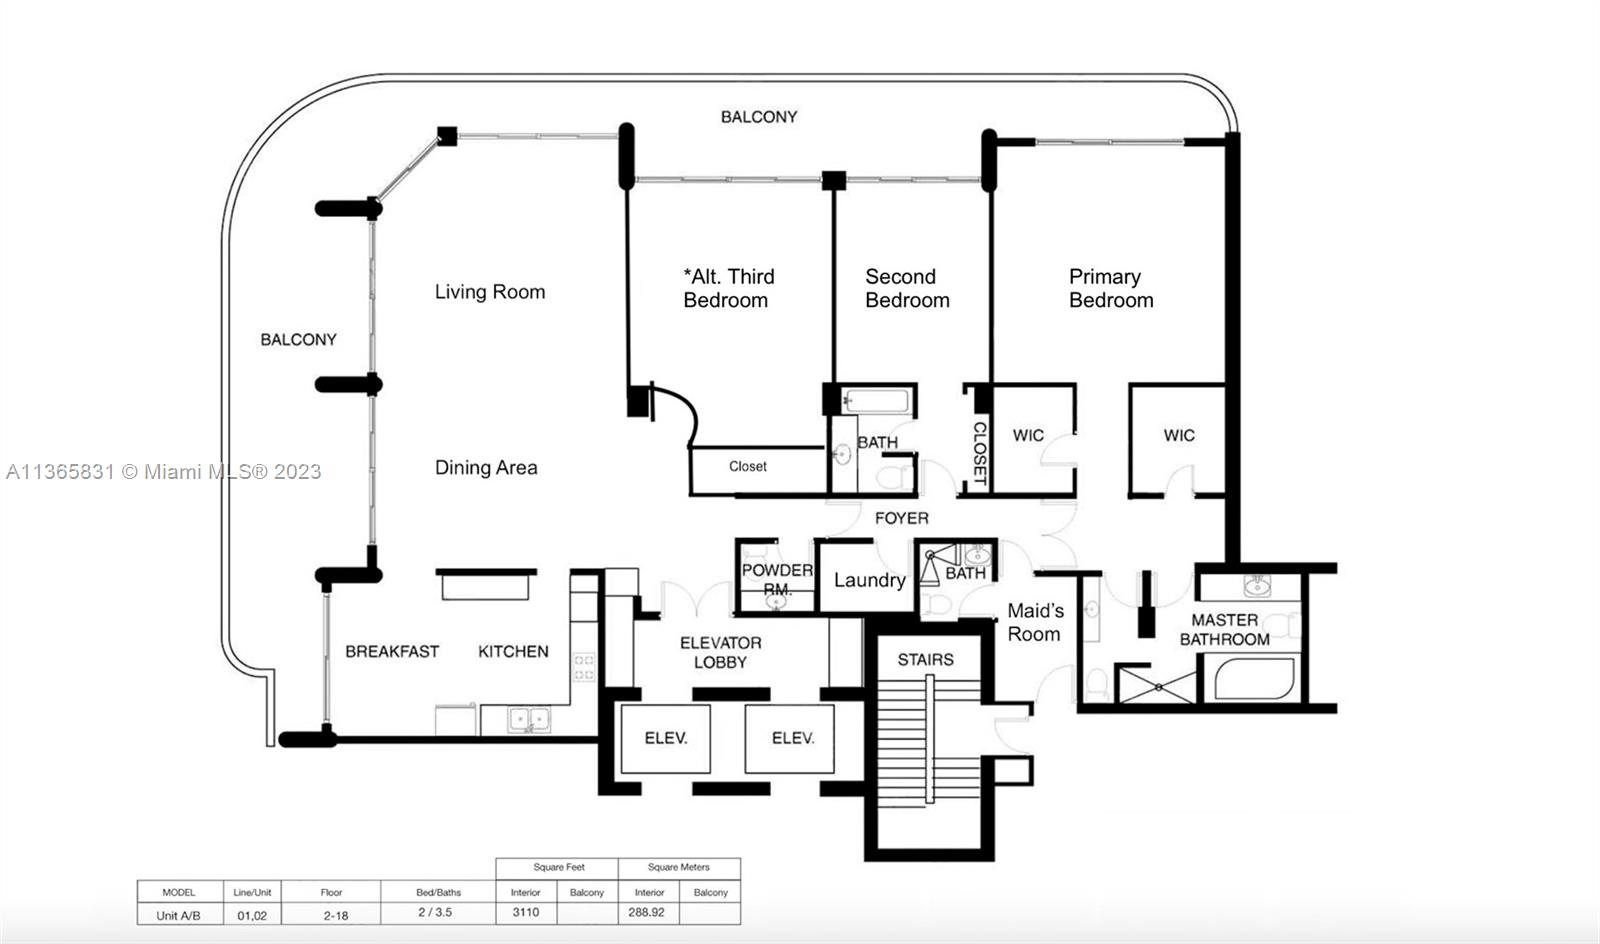 Possible floor plan with 3rd bedroom